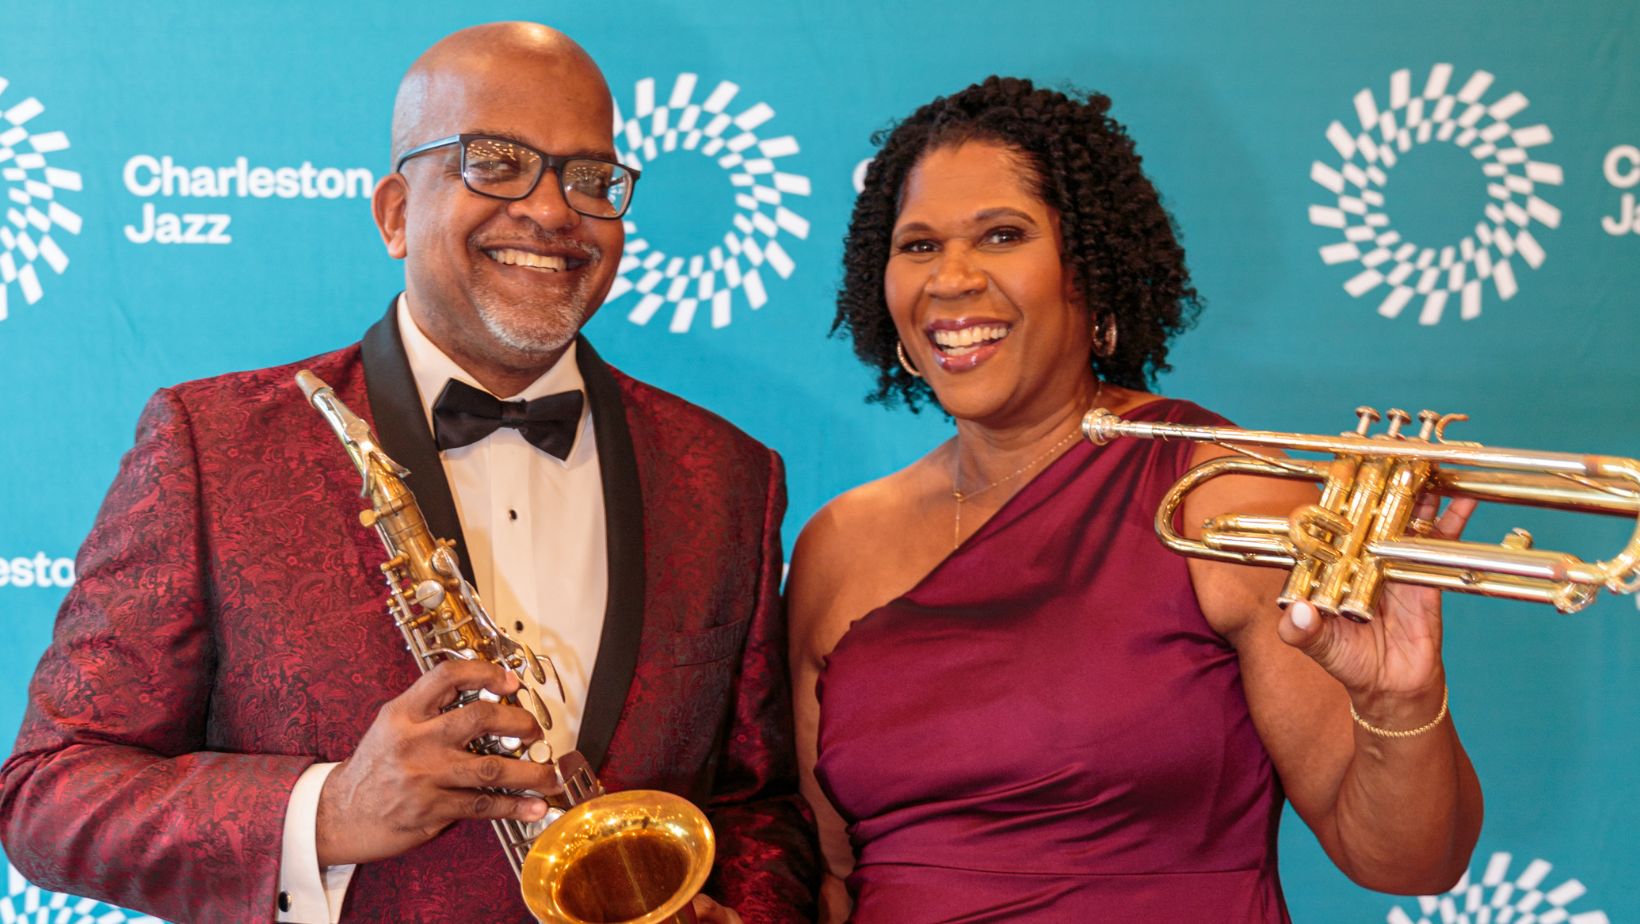 Man and woman at Charleston Jazz gala posing with instruments